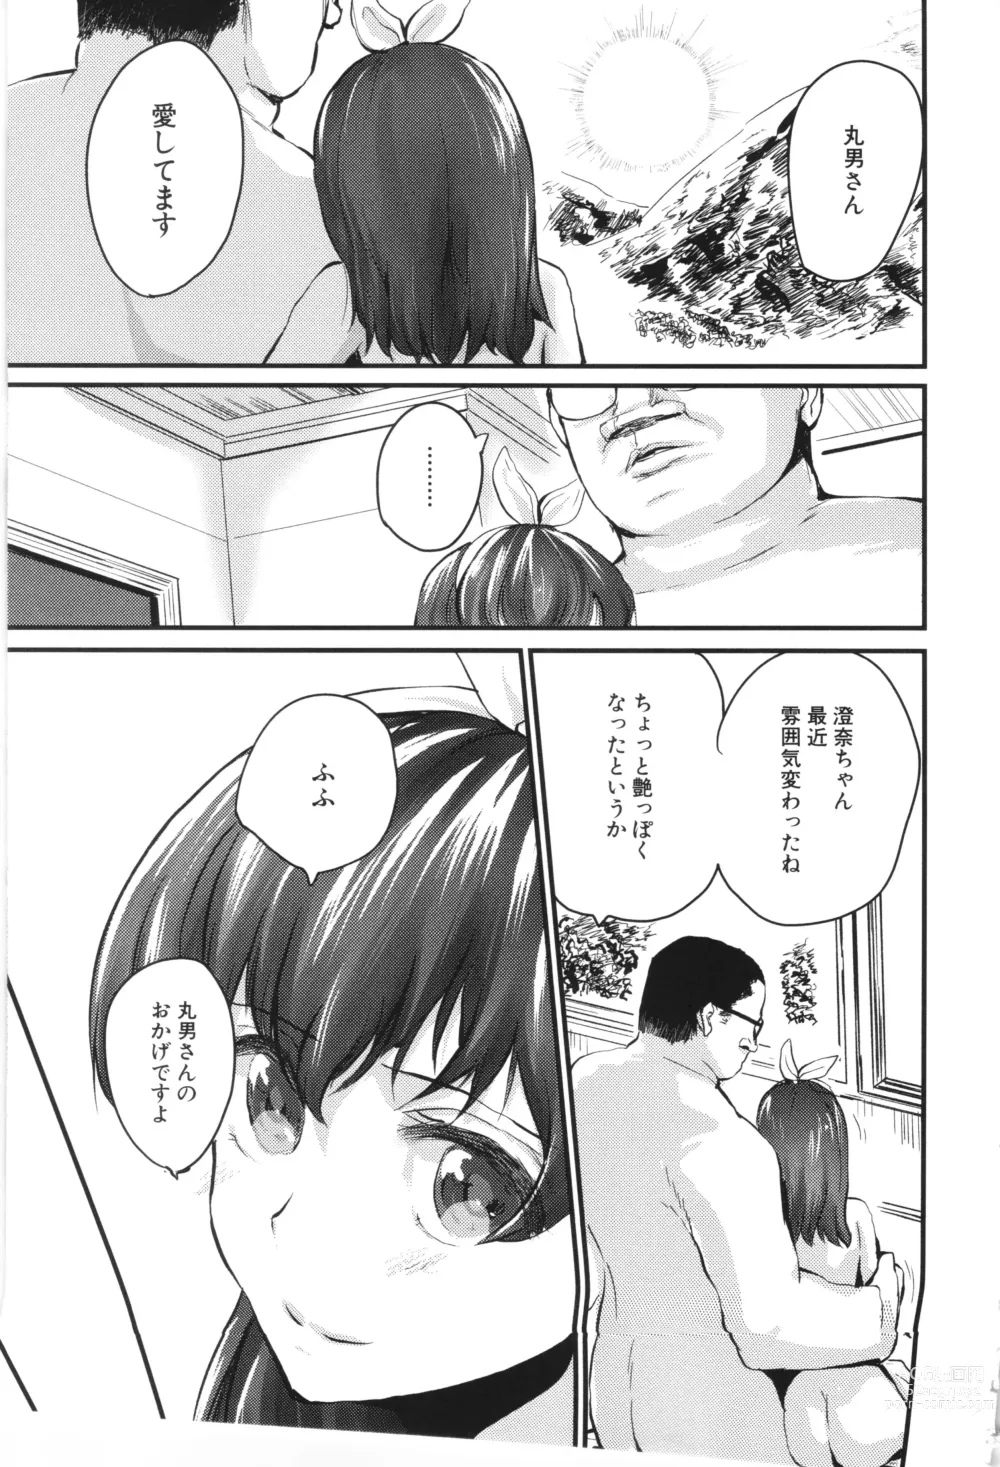 Page 19 of manga Mesu Kobi koubi Osu Bou-sama-tachi ni Kansha no Koshi Furi